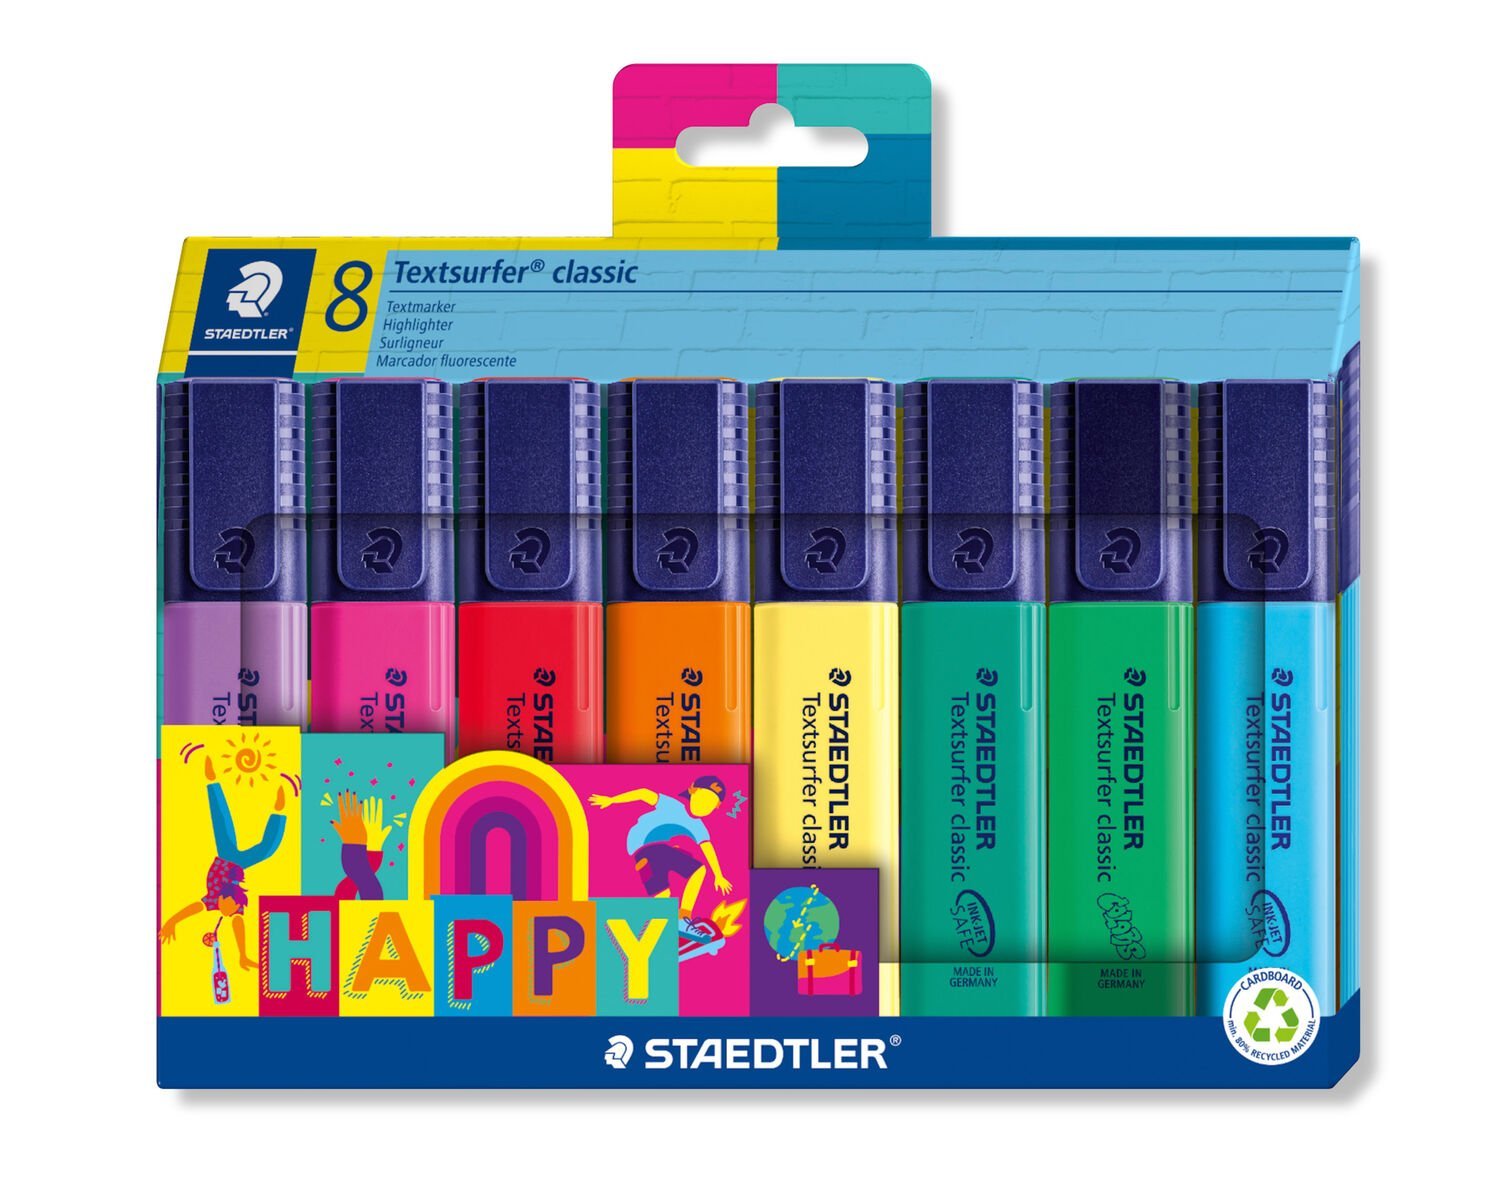 Etui carton de 8 surligneurs classiques nouvelle gamme « HAPPY colours »